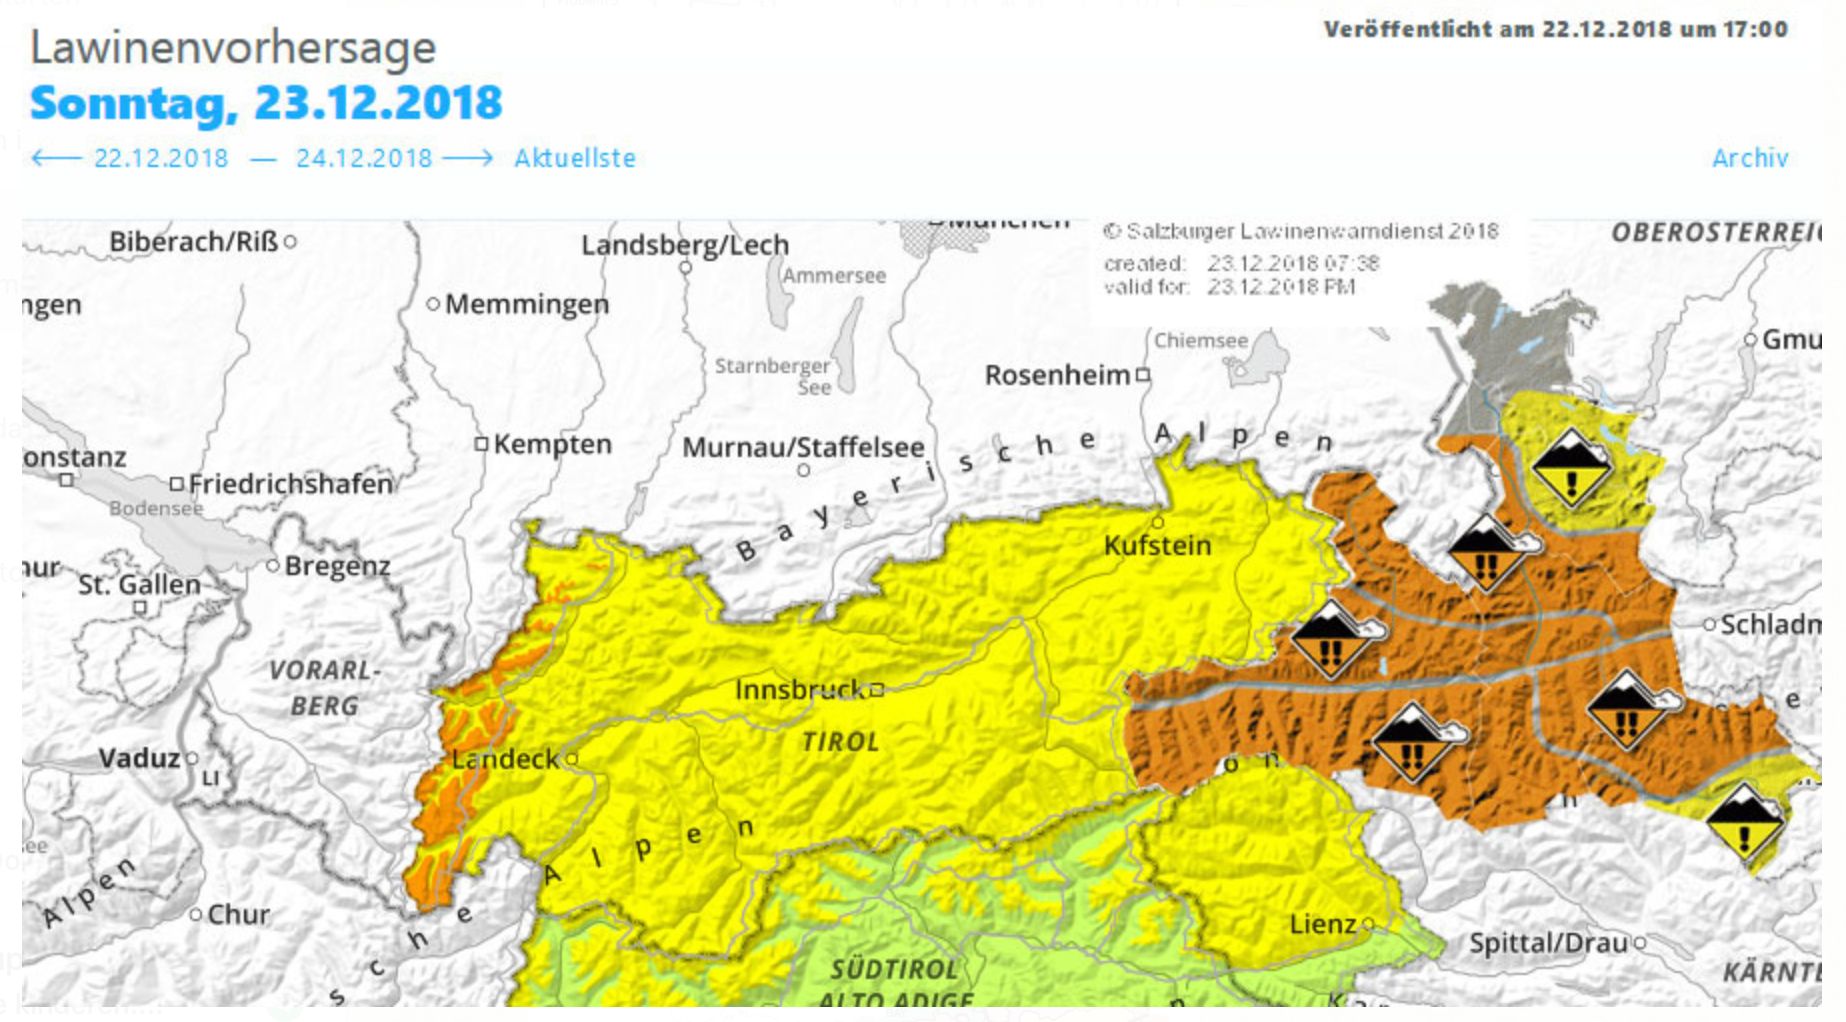 Lawineberichten voor zondag 23.12.2018 voor Tirol links en Salzburg rechts (Oostenrijk)